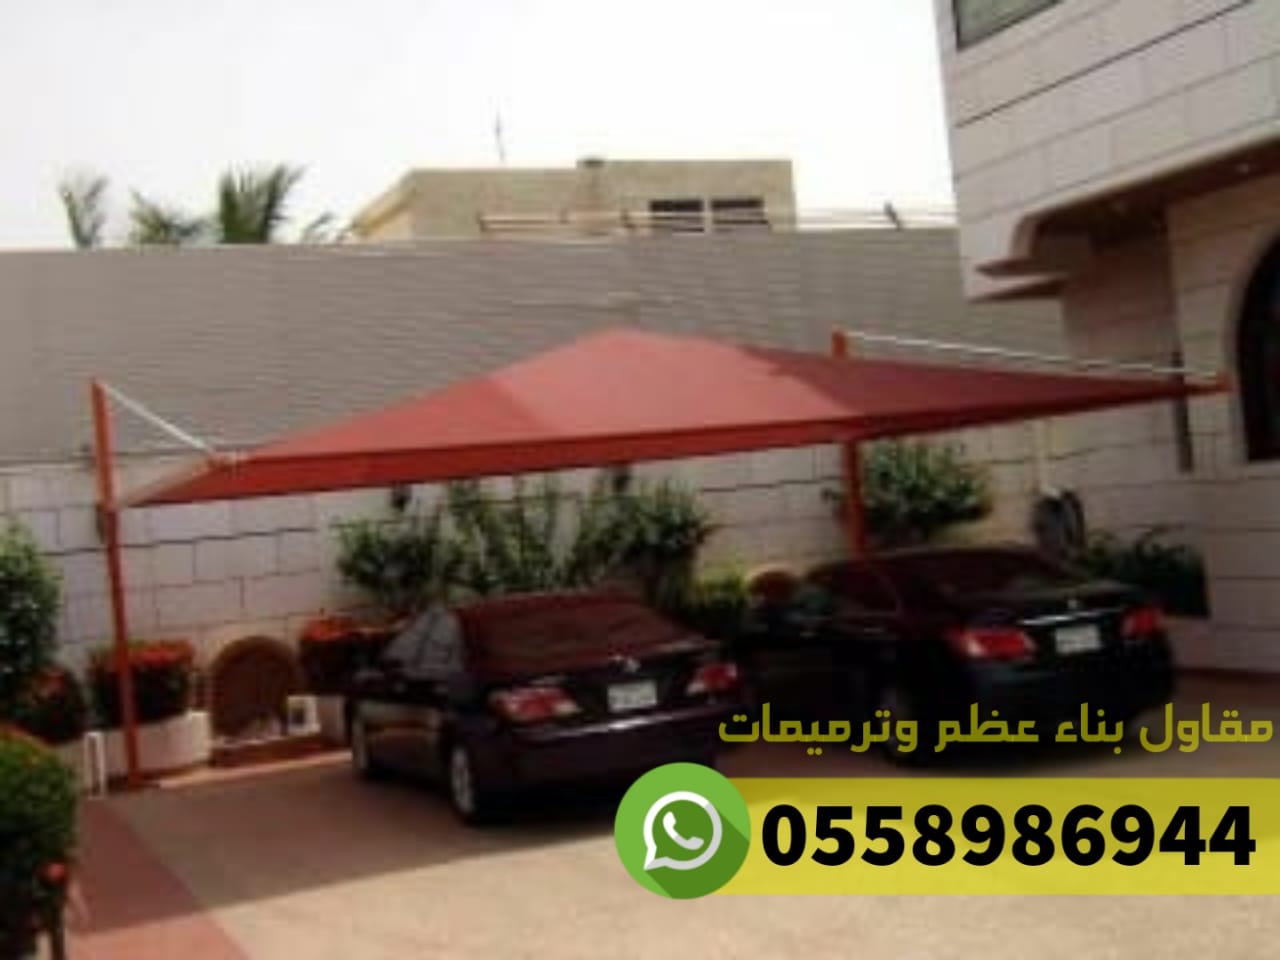 افضل مظلات للسيارات في جدة مكة الطائف, 0558986944 P_2536ngge82